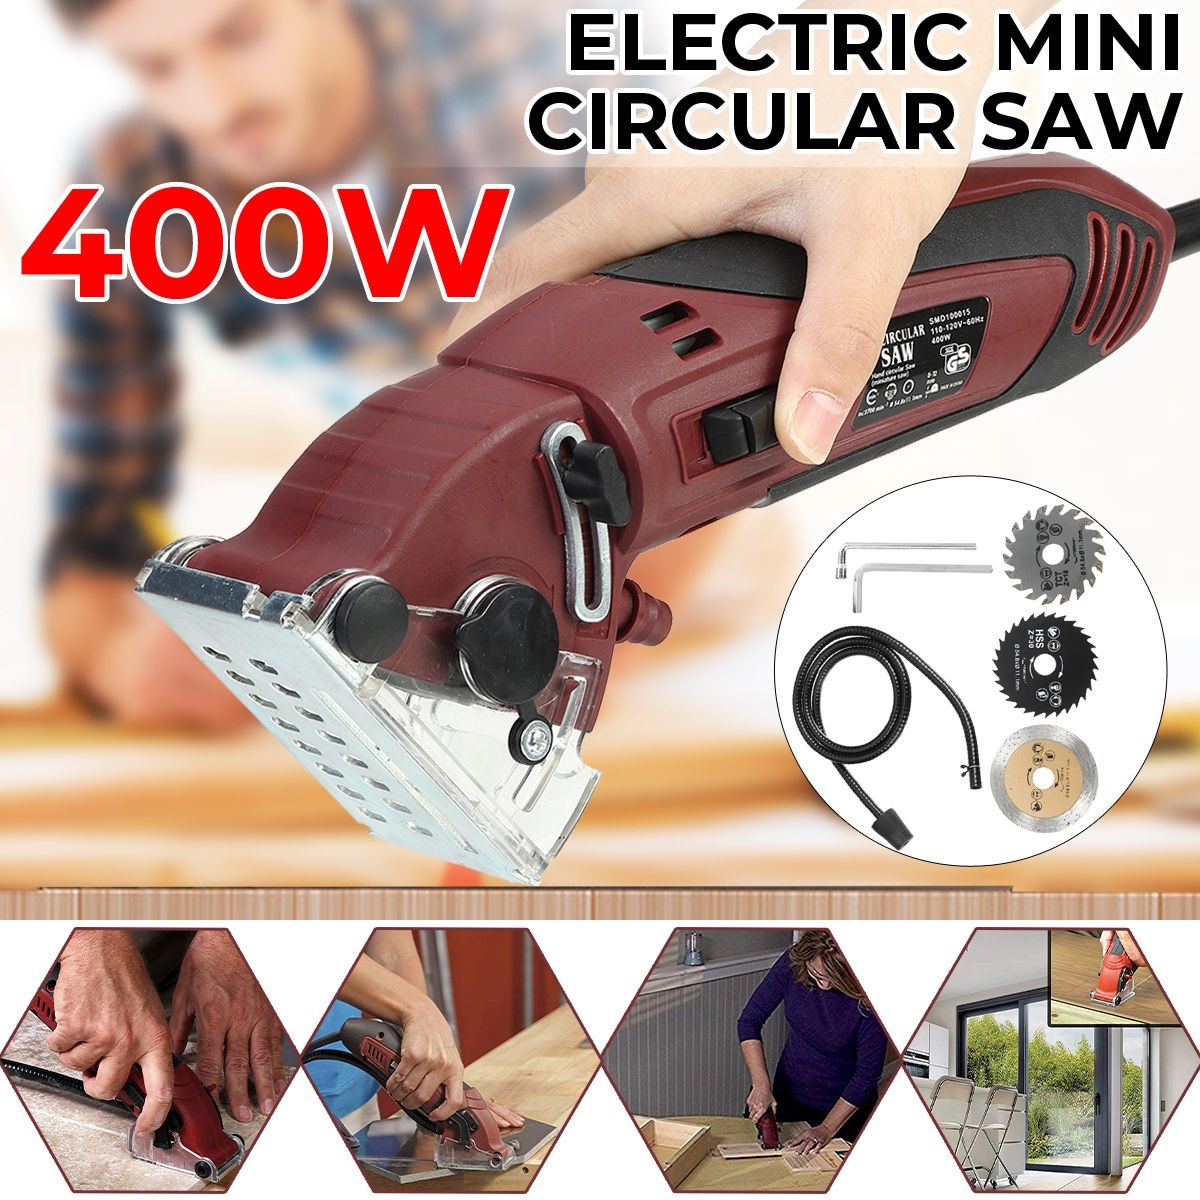 Mini-Cutting-Machine-Electric-Laser-Circular-Saw-Multi-Functional-Handheld-Grinder-Kit-Carpenter-Woo-1760084